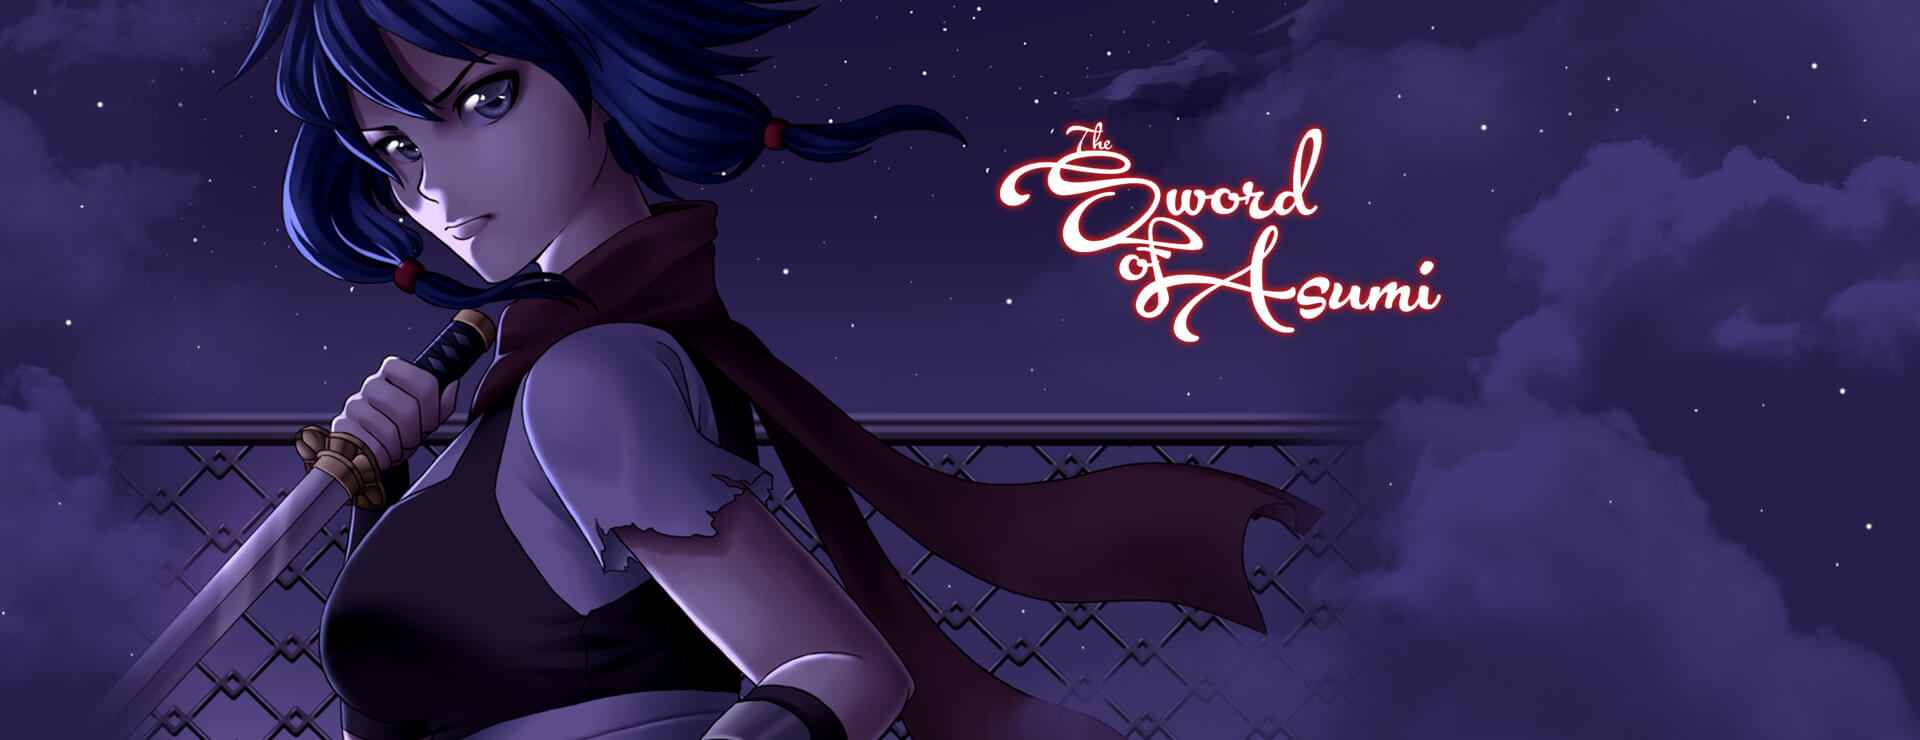 Sword of Asumi - Visual Novel Game